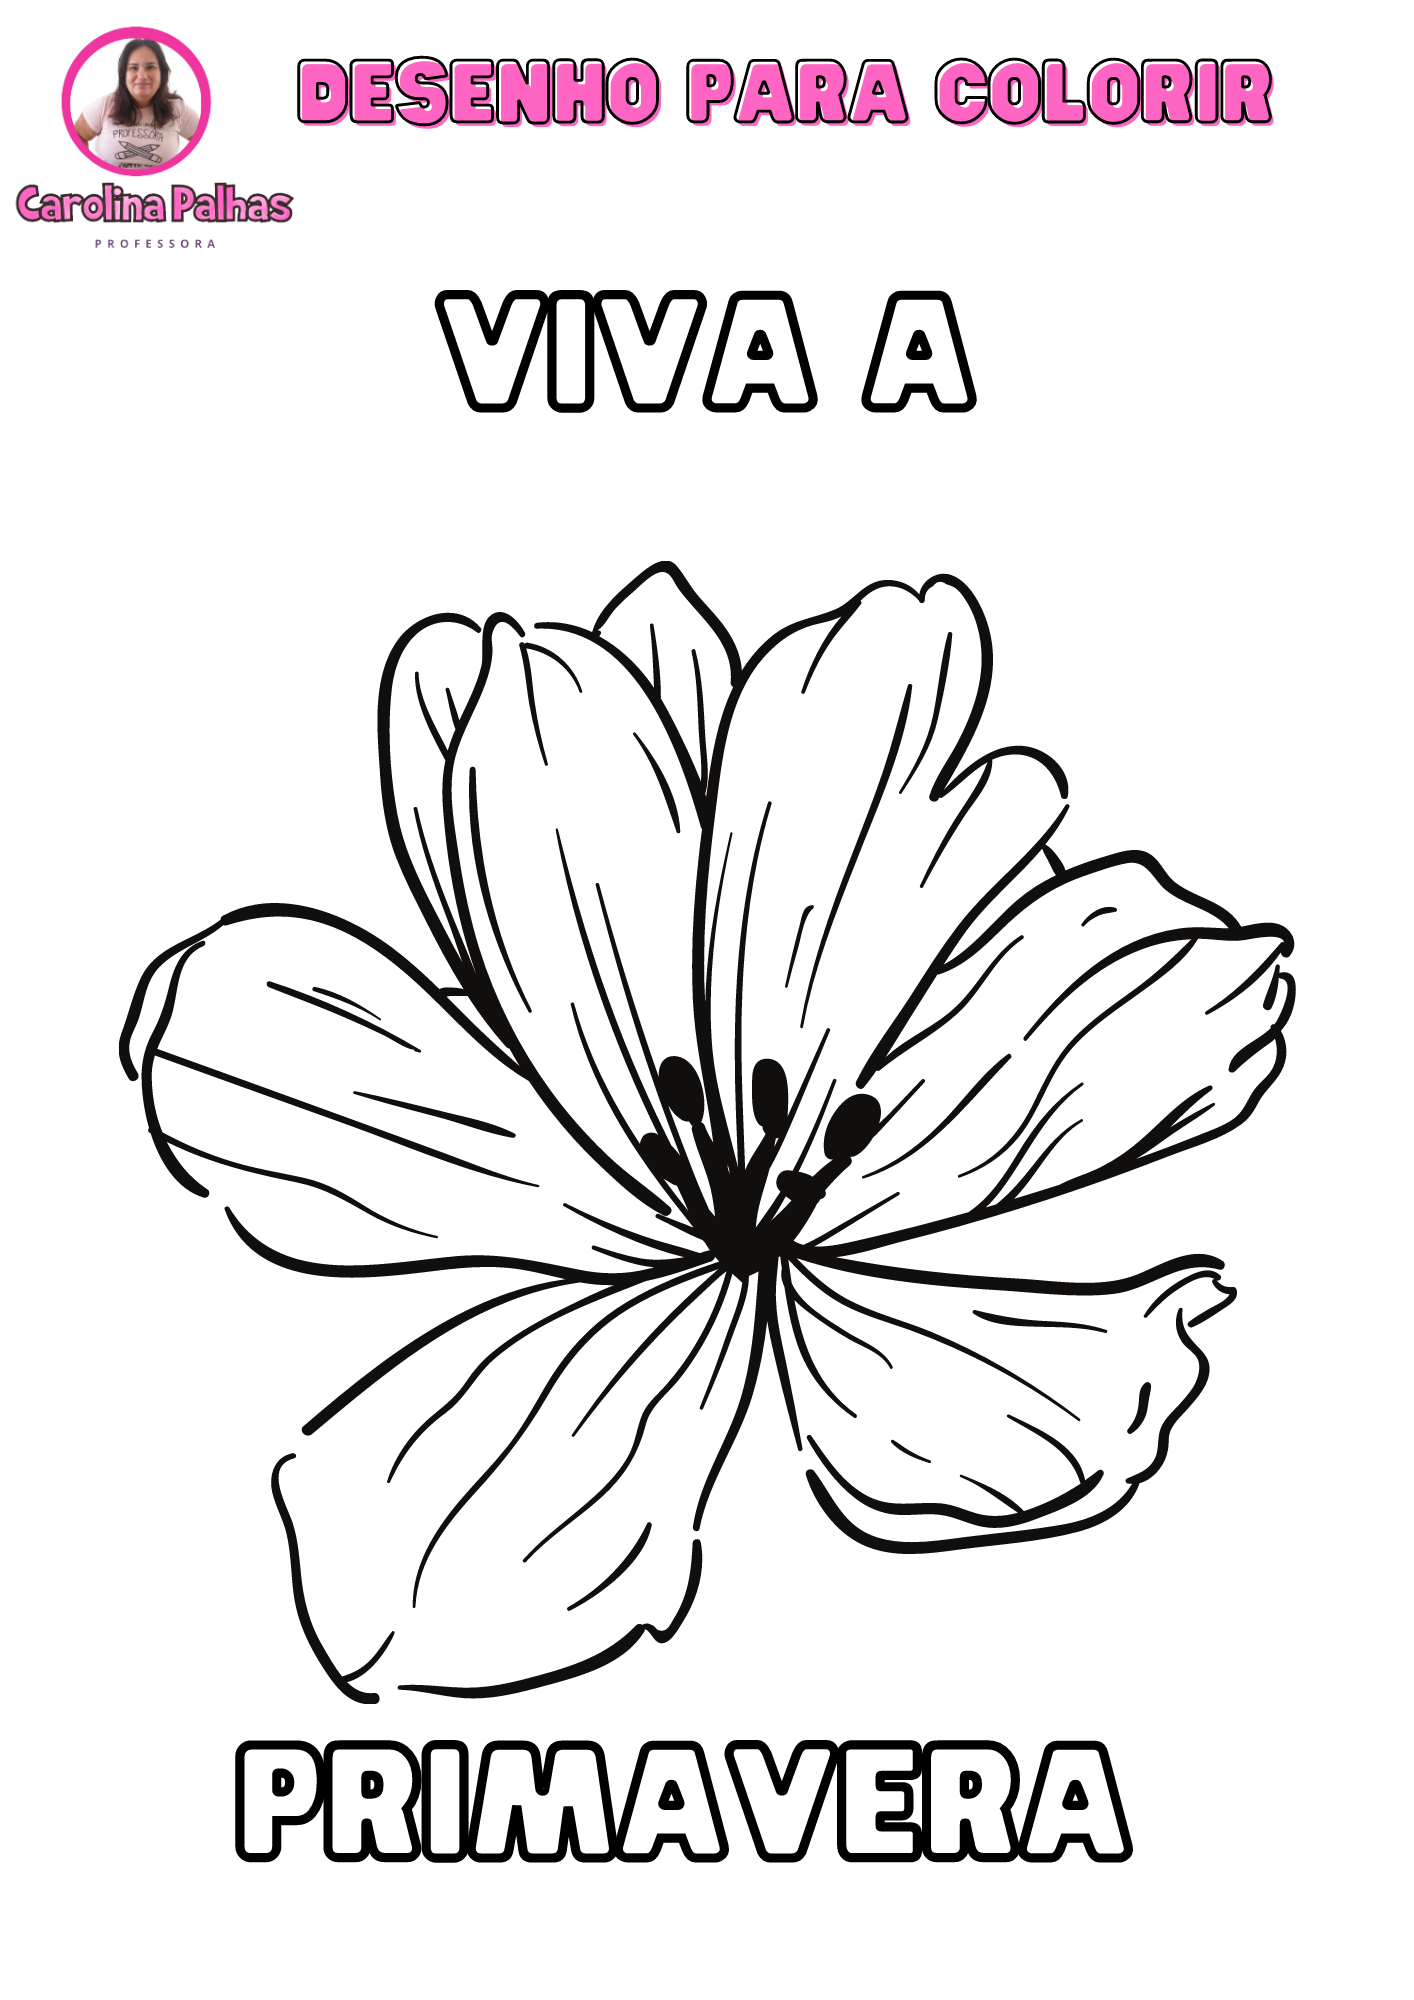 Desenho para colorir com o tema Viva a Primavera - Professora Carolina  Palhas